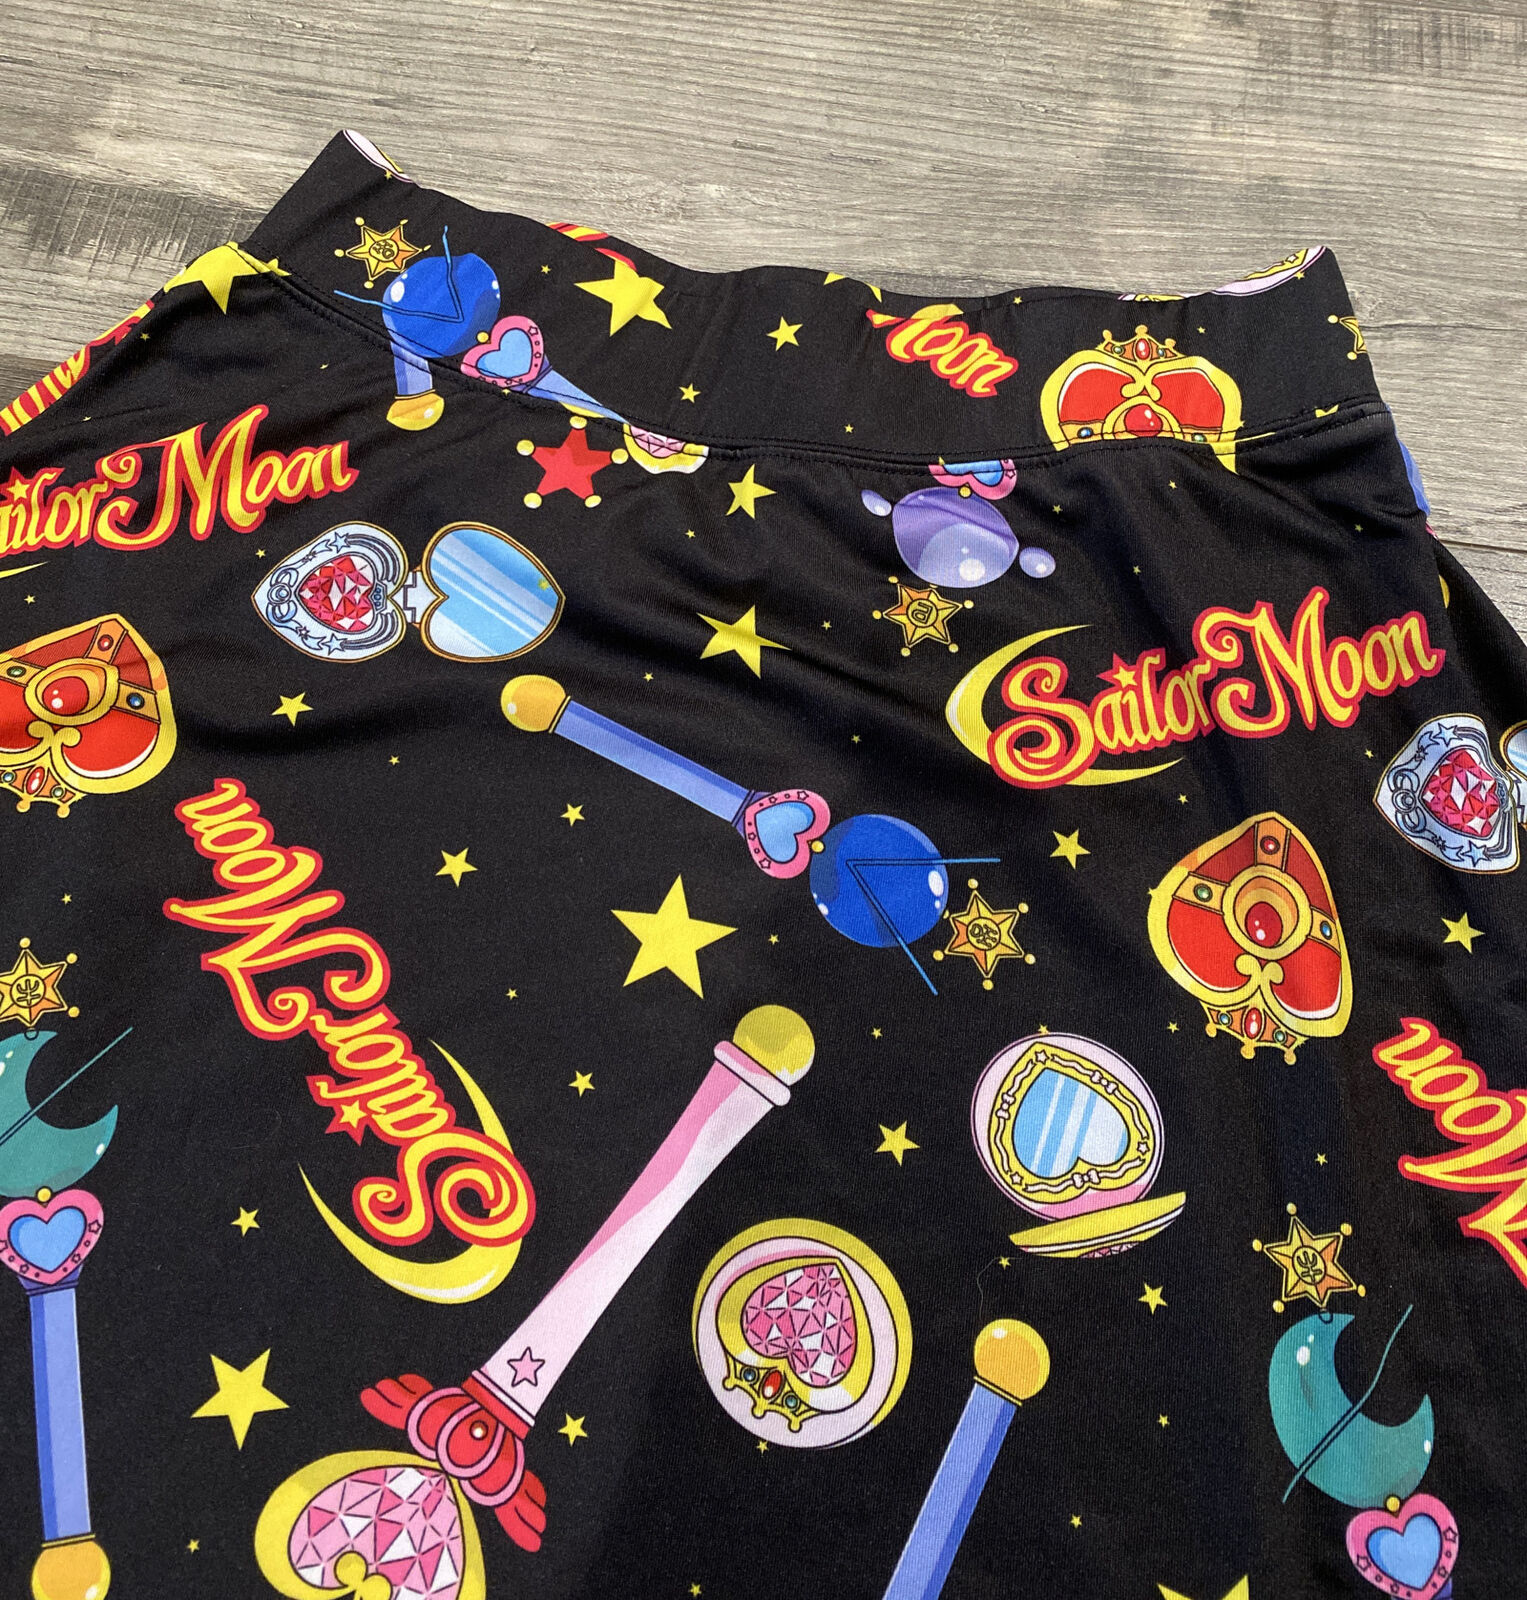 Sailor Moon Skater Skirt Black size Medium - image 5